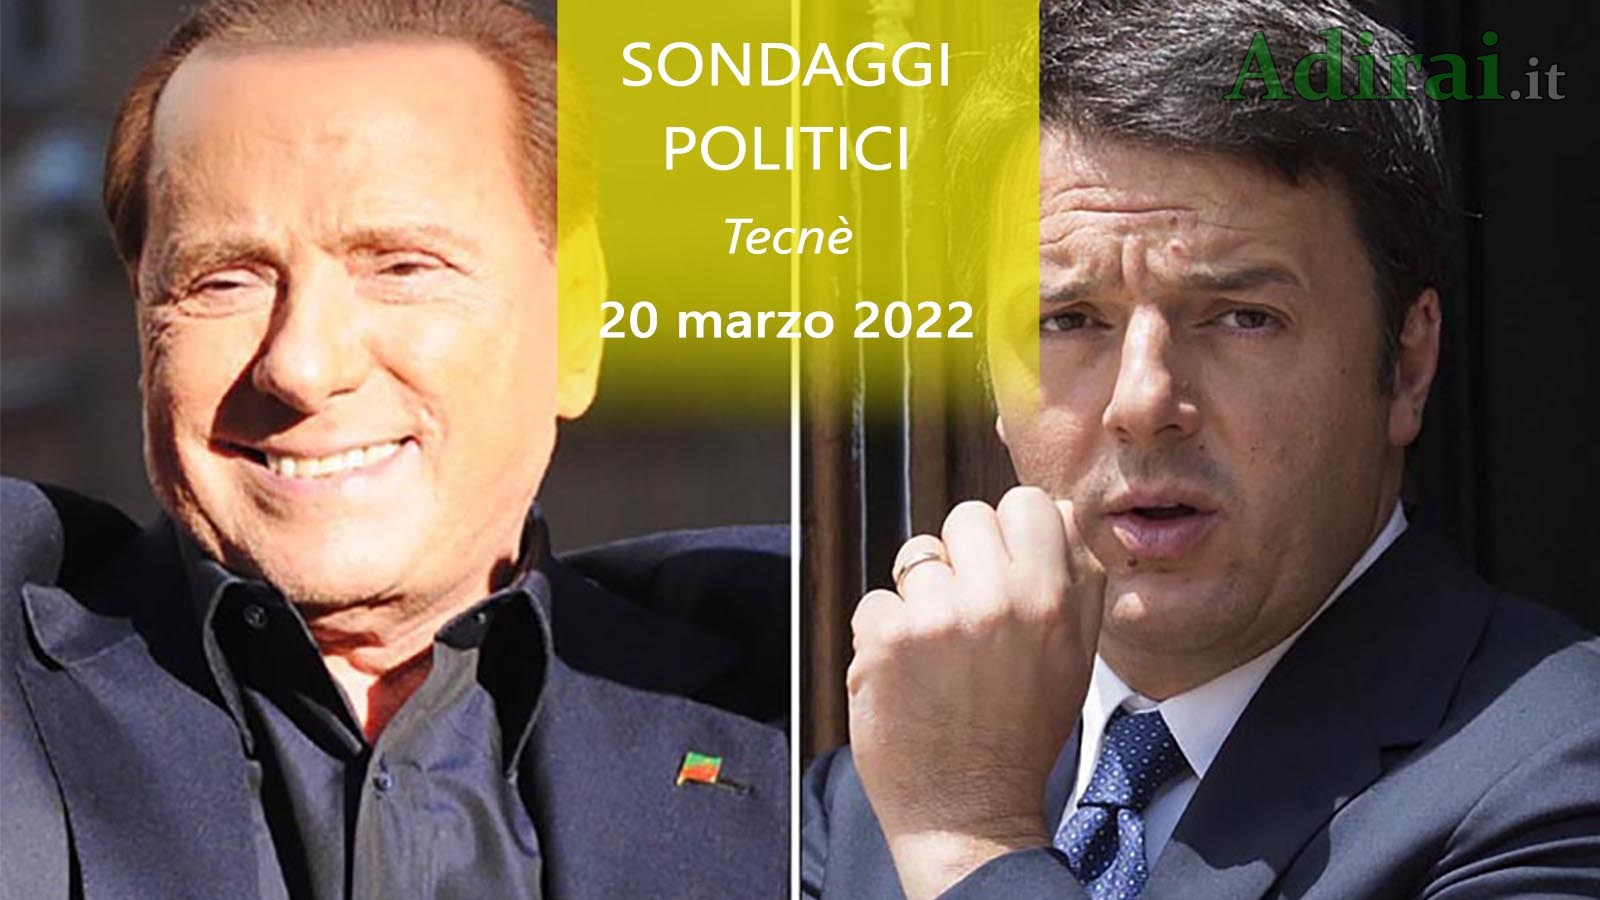 ultimi sondaggi politici 20 marzo 2022 tecne